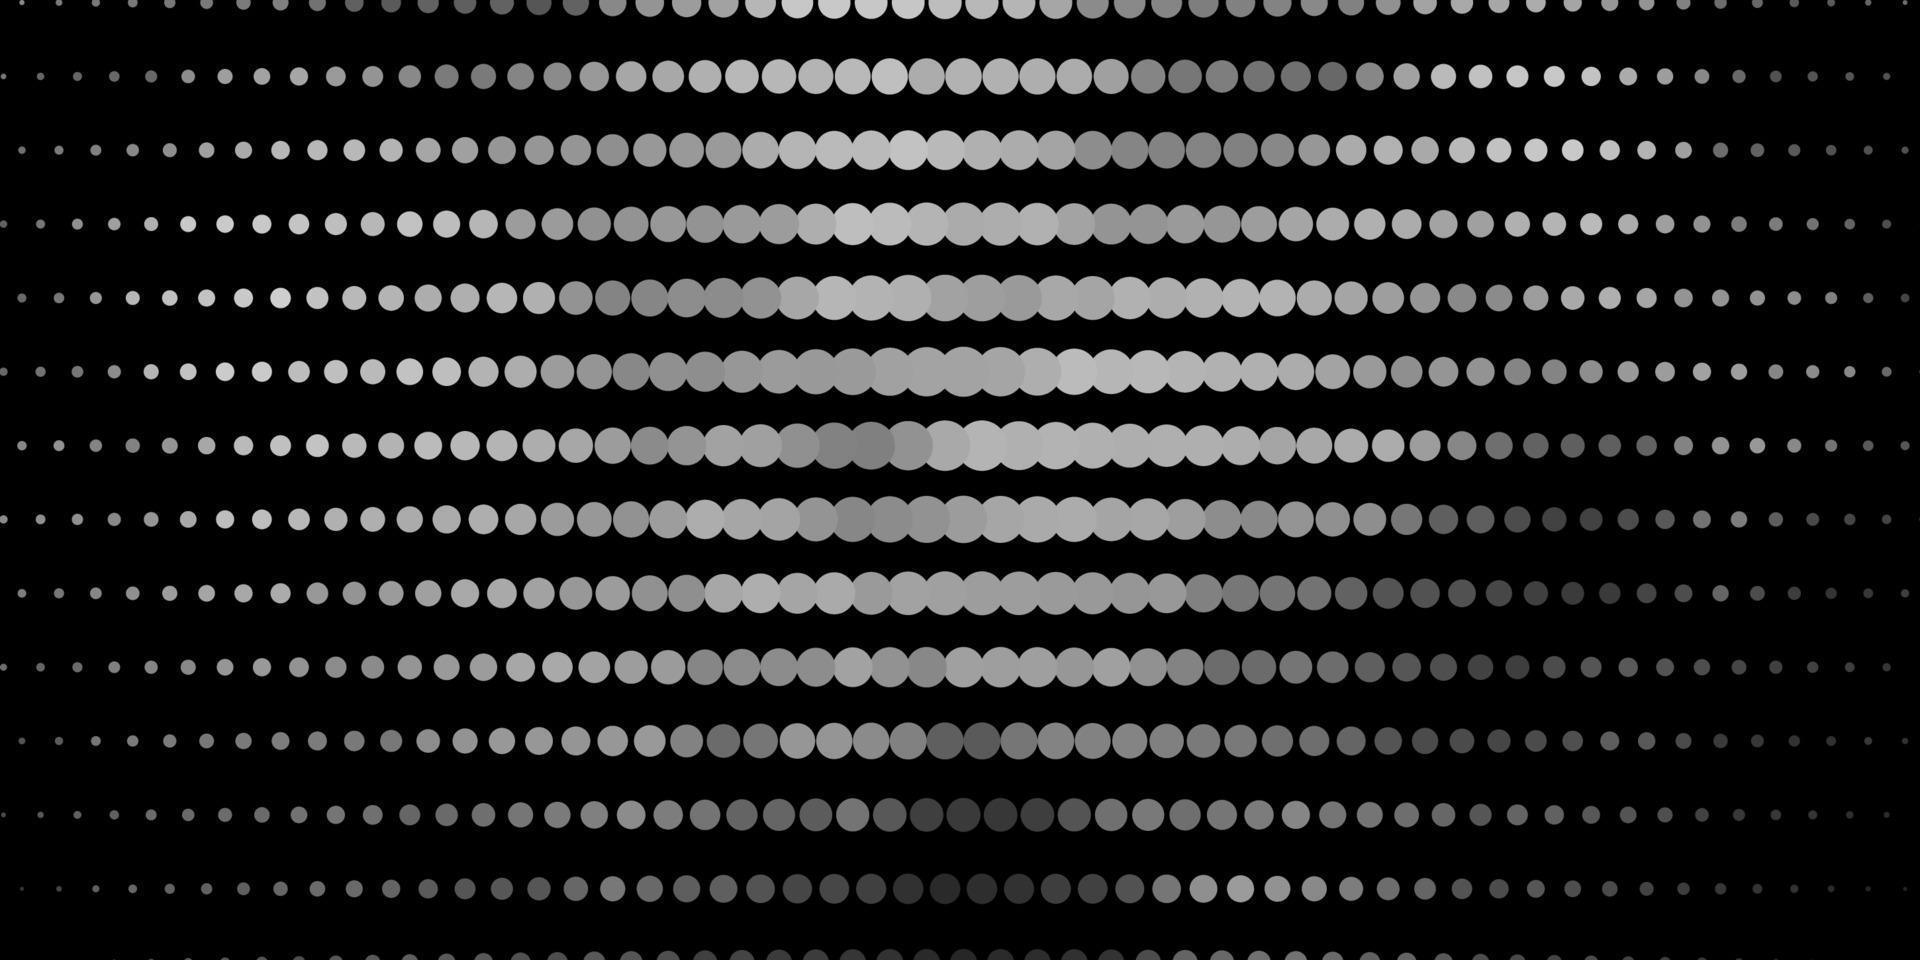 patrón de vector gris oscuro con esferas.